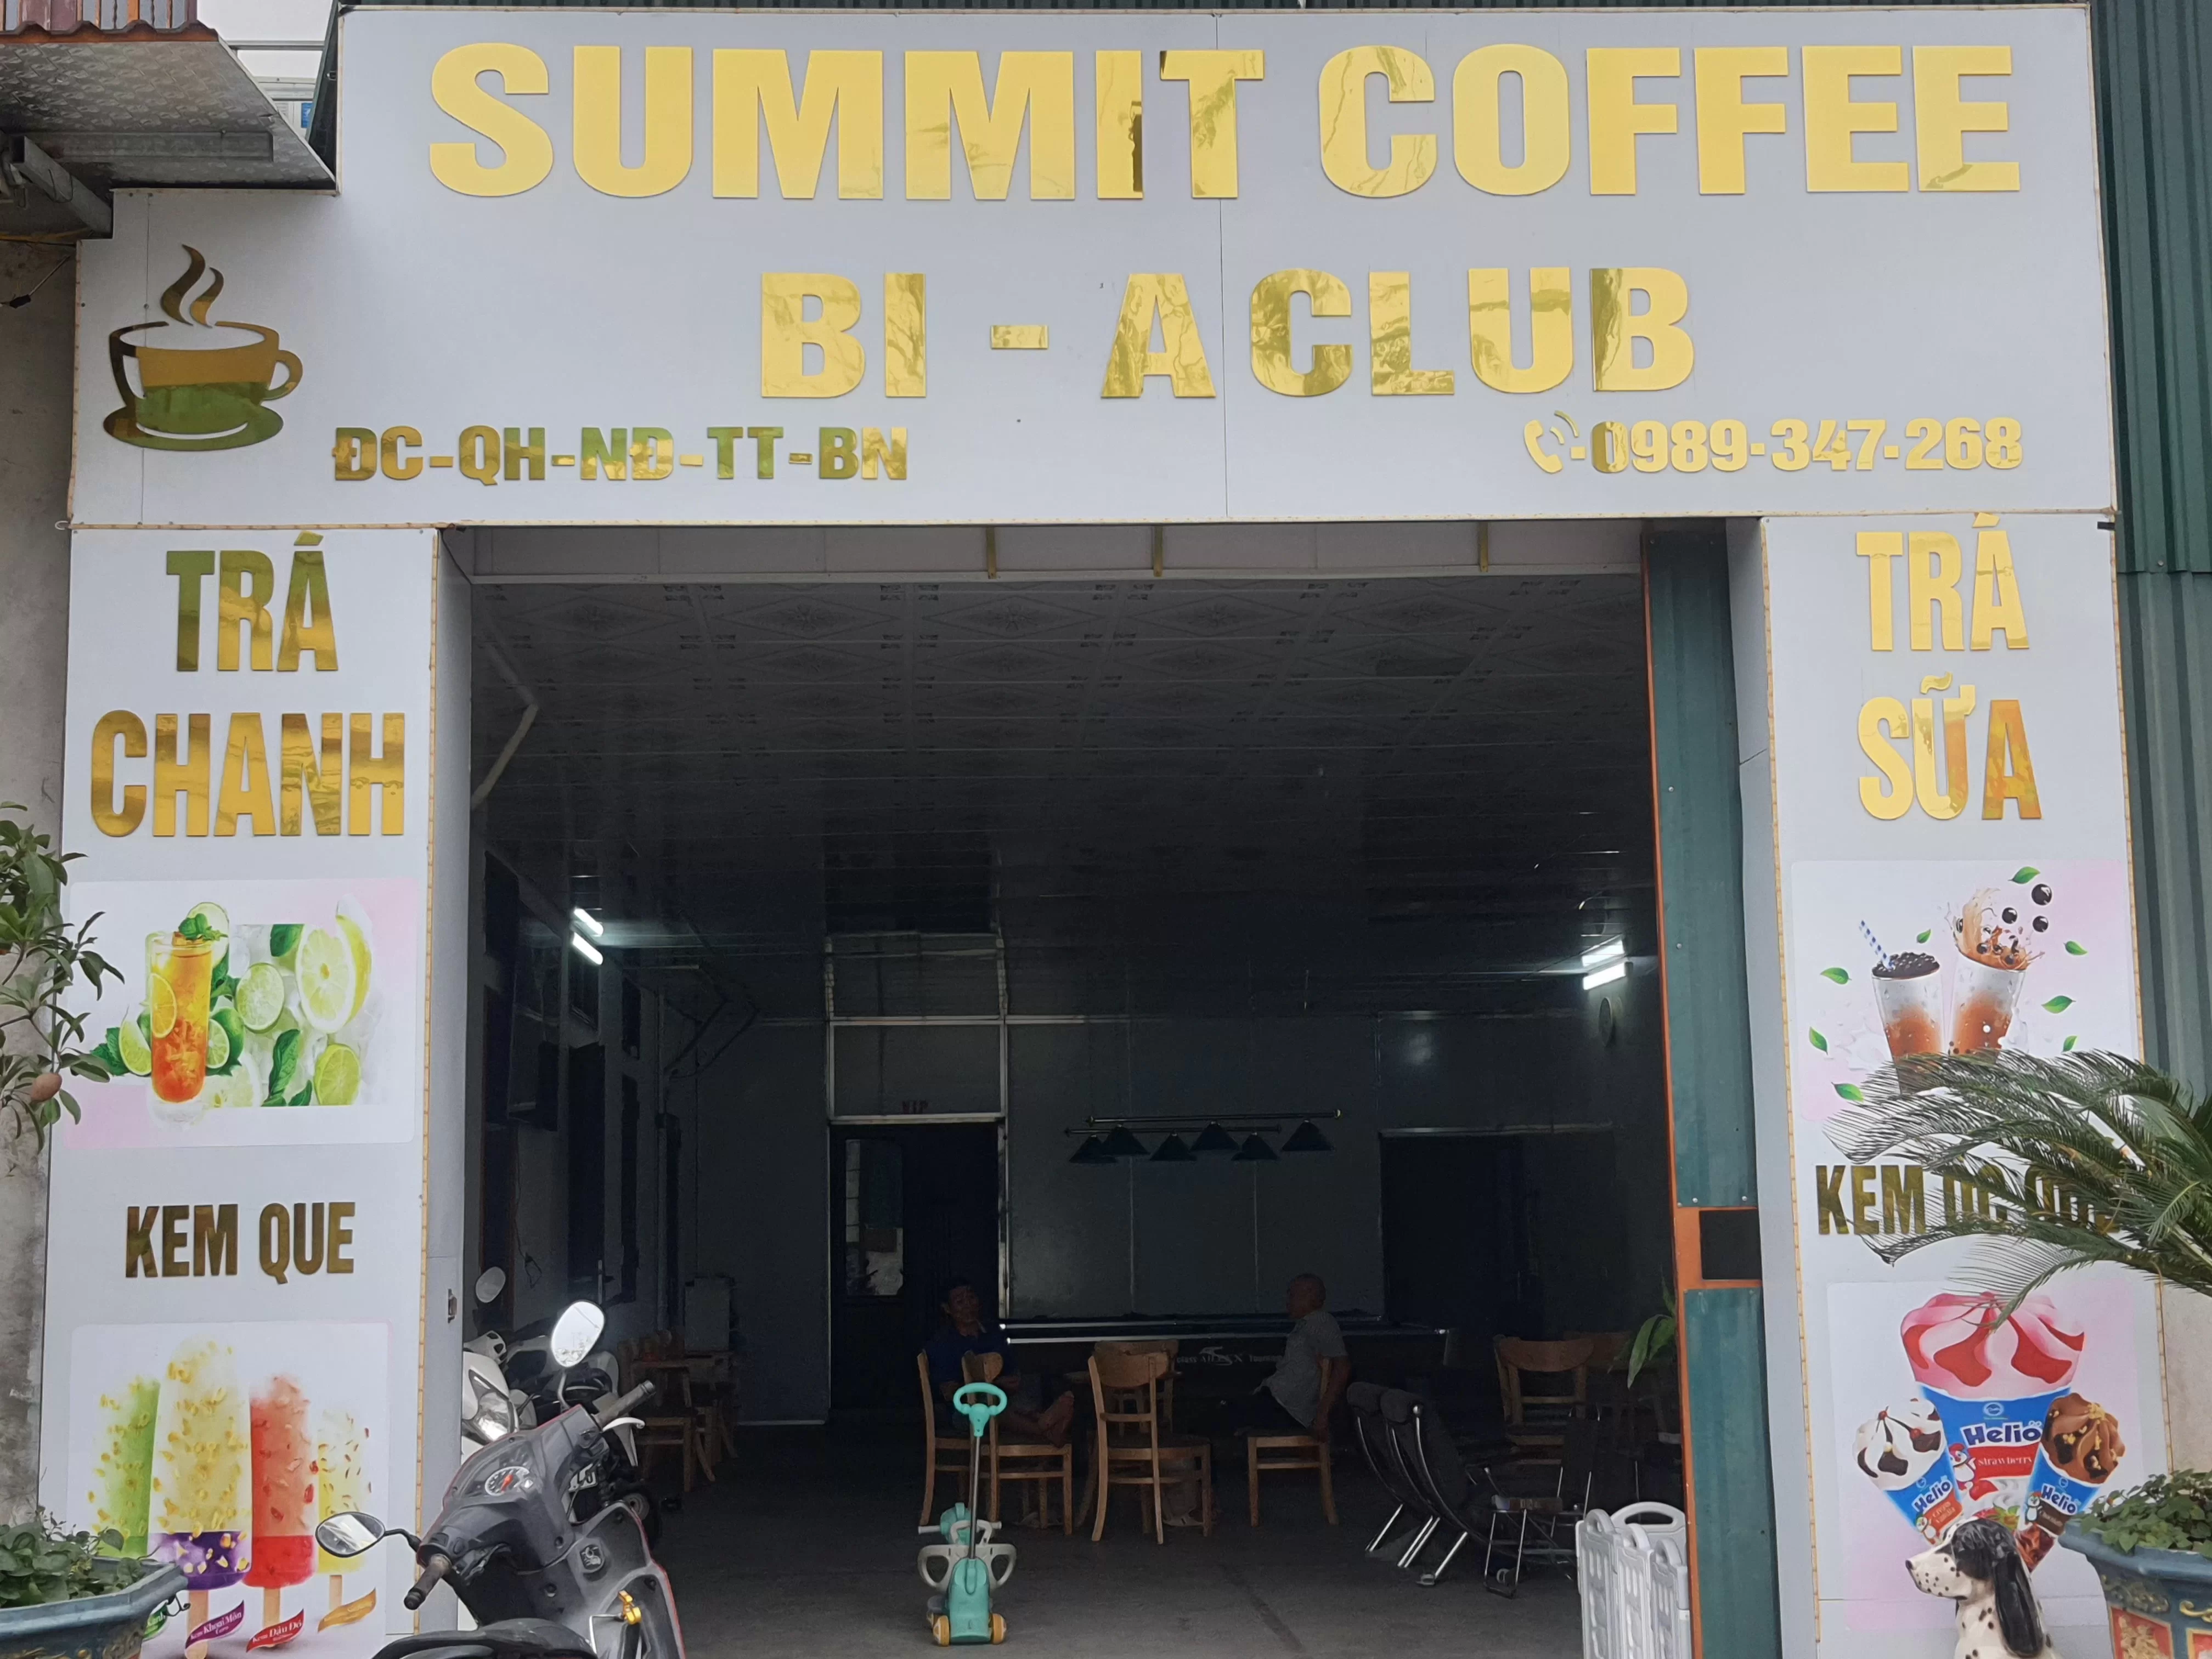 Summit Coffee & Trà Sữa Bi A Club